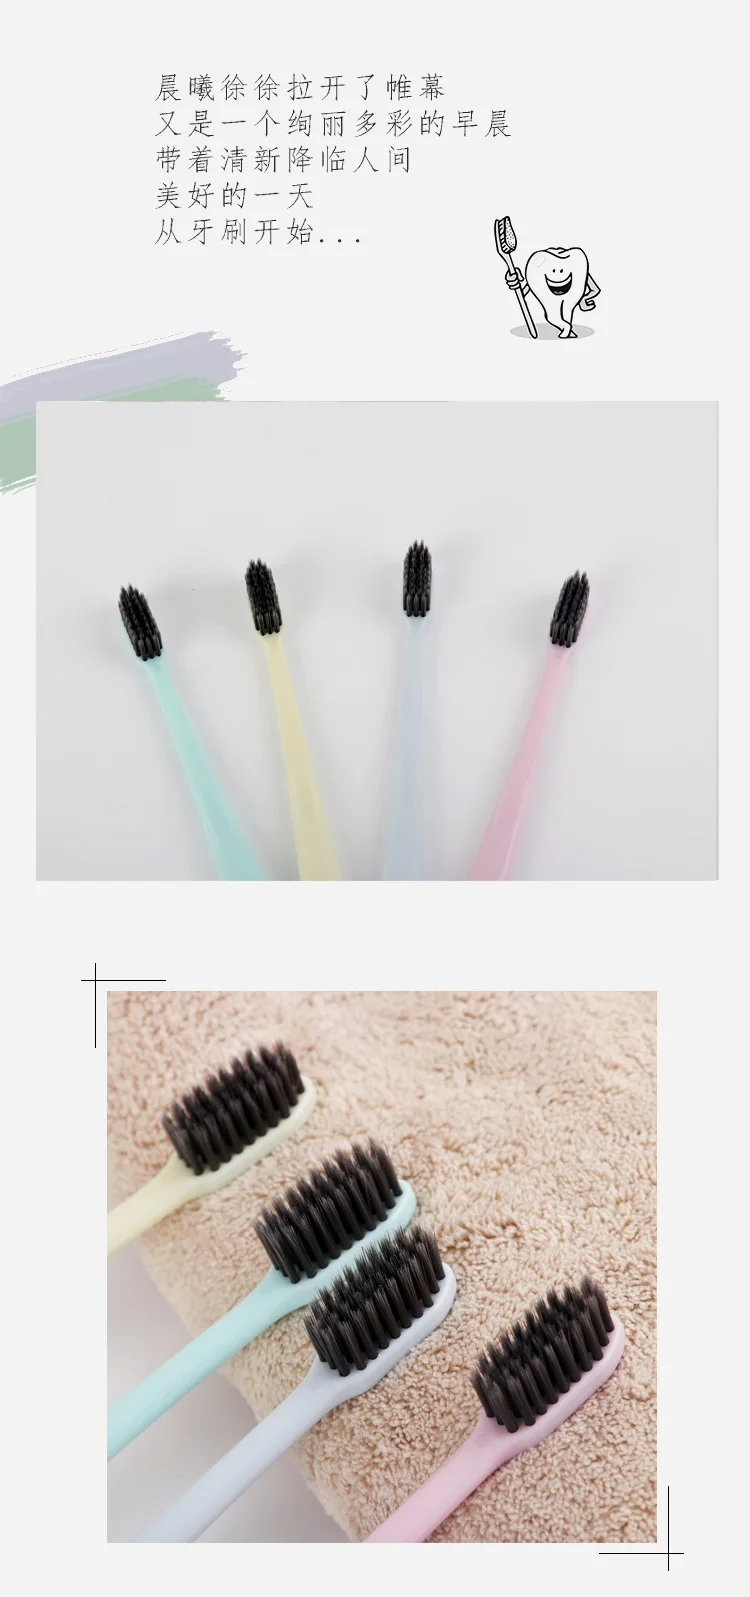 4 шт четыре бамбуковые черные зубные щетки без печати тот же японский простой хороший продукт супер тонкая мягкая зубная щетка для волос